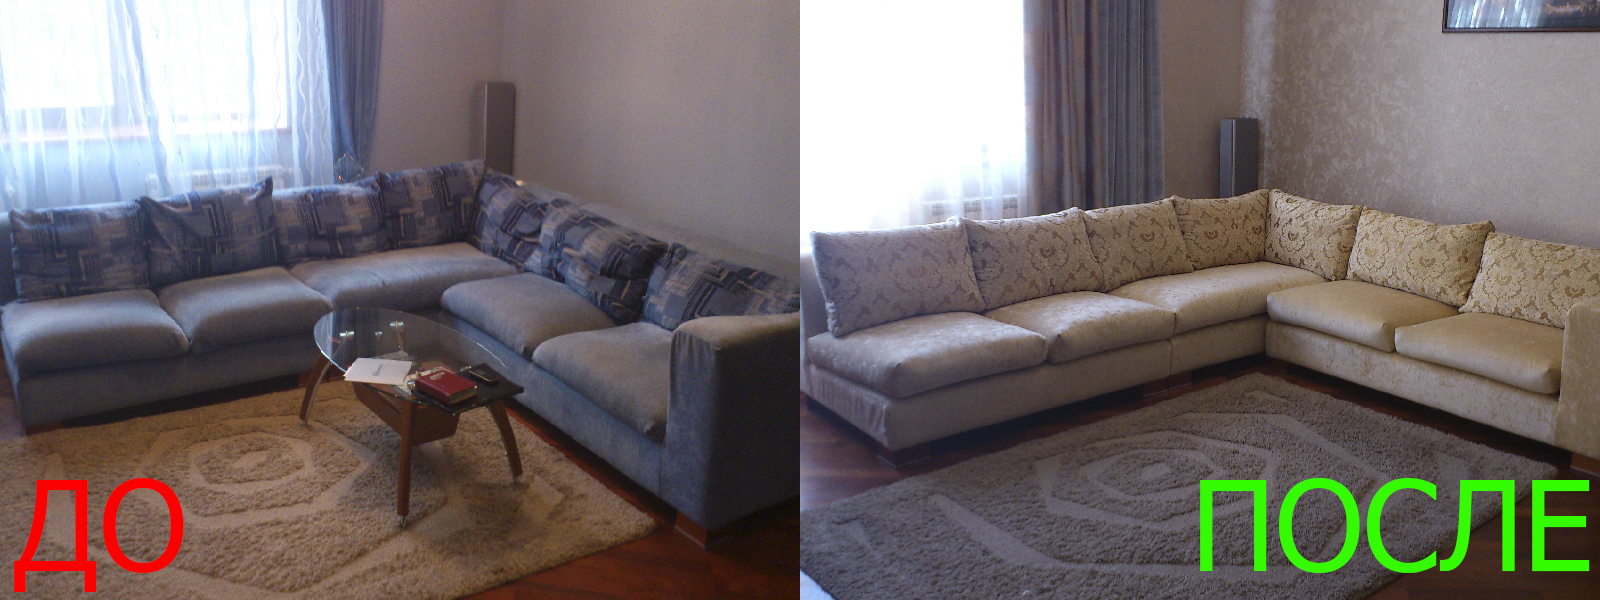 Обтяжка углового дивана в Евпатории от опытных мастеров компании MebelProfi - 100% гарантия